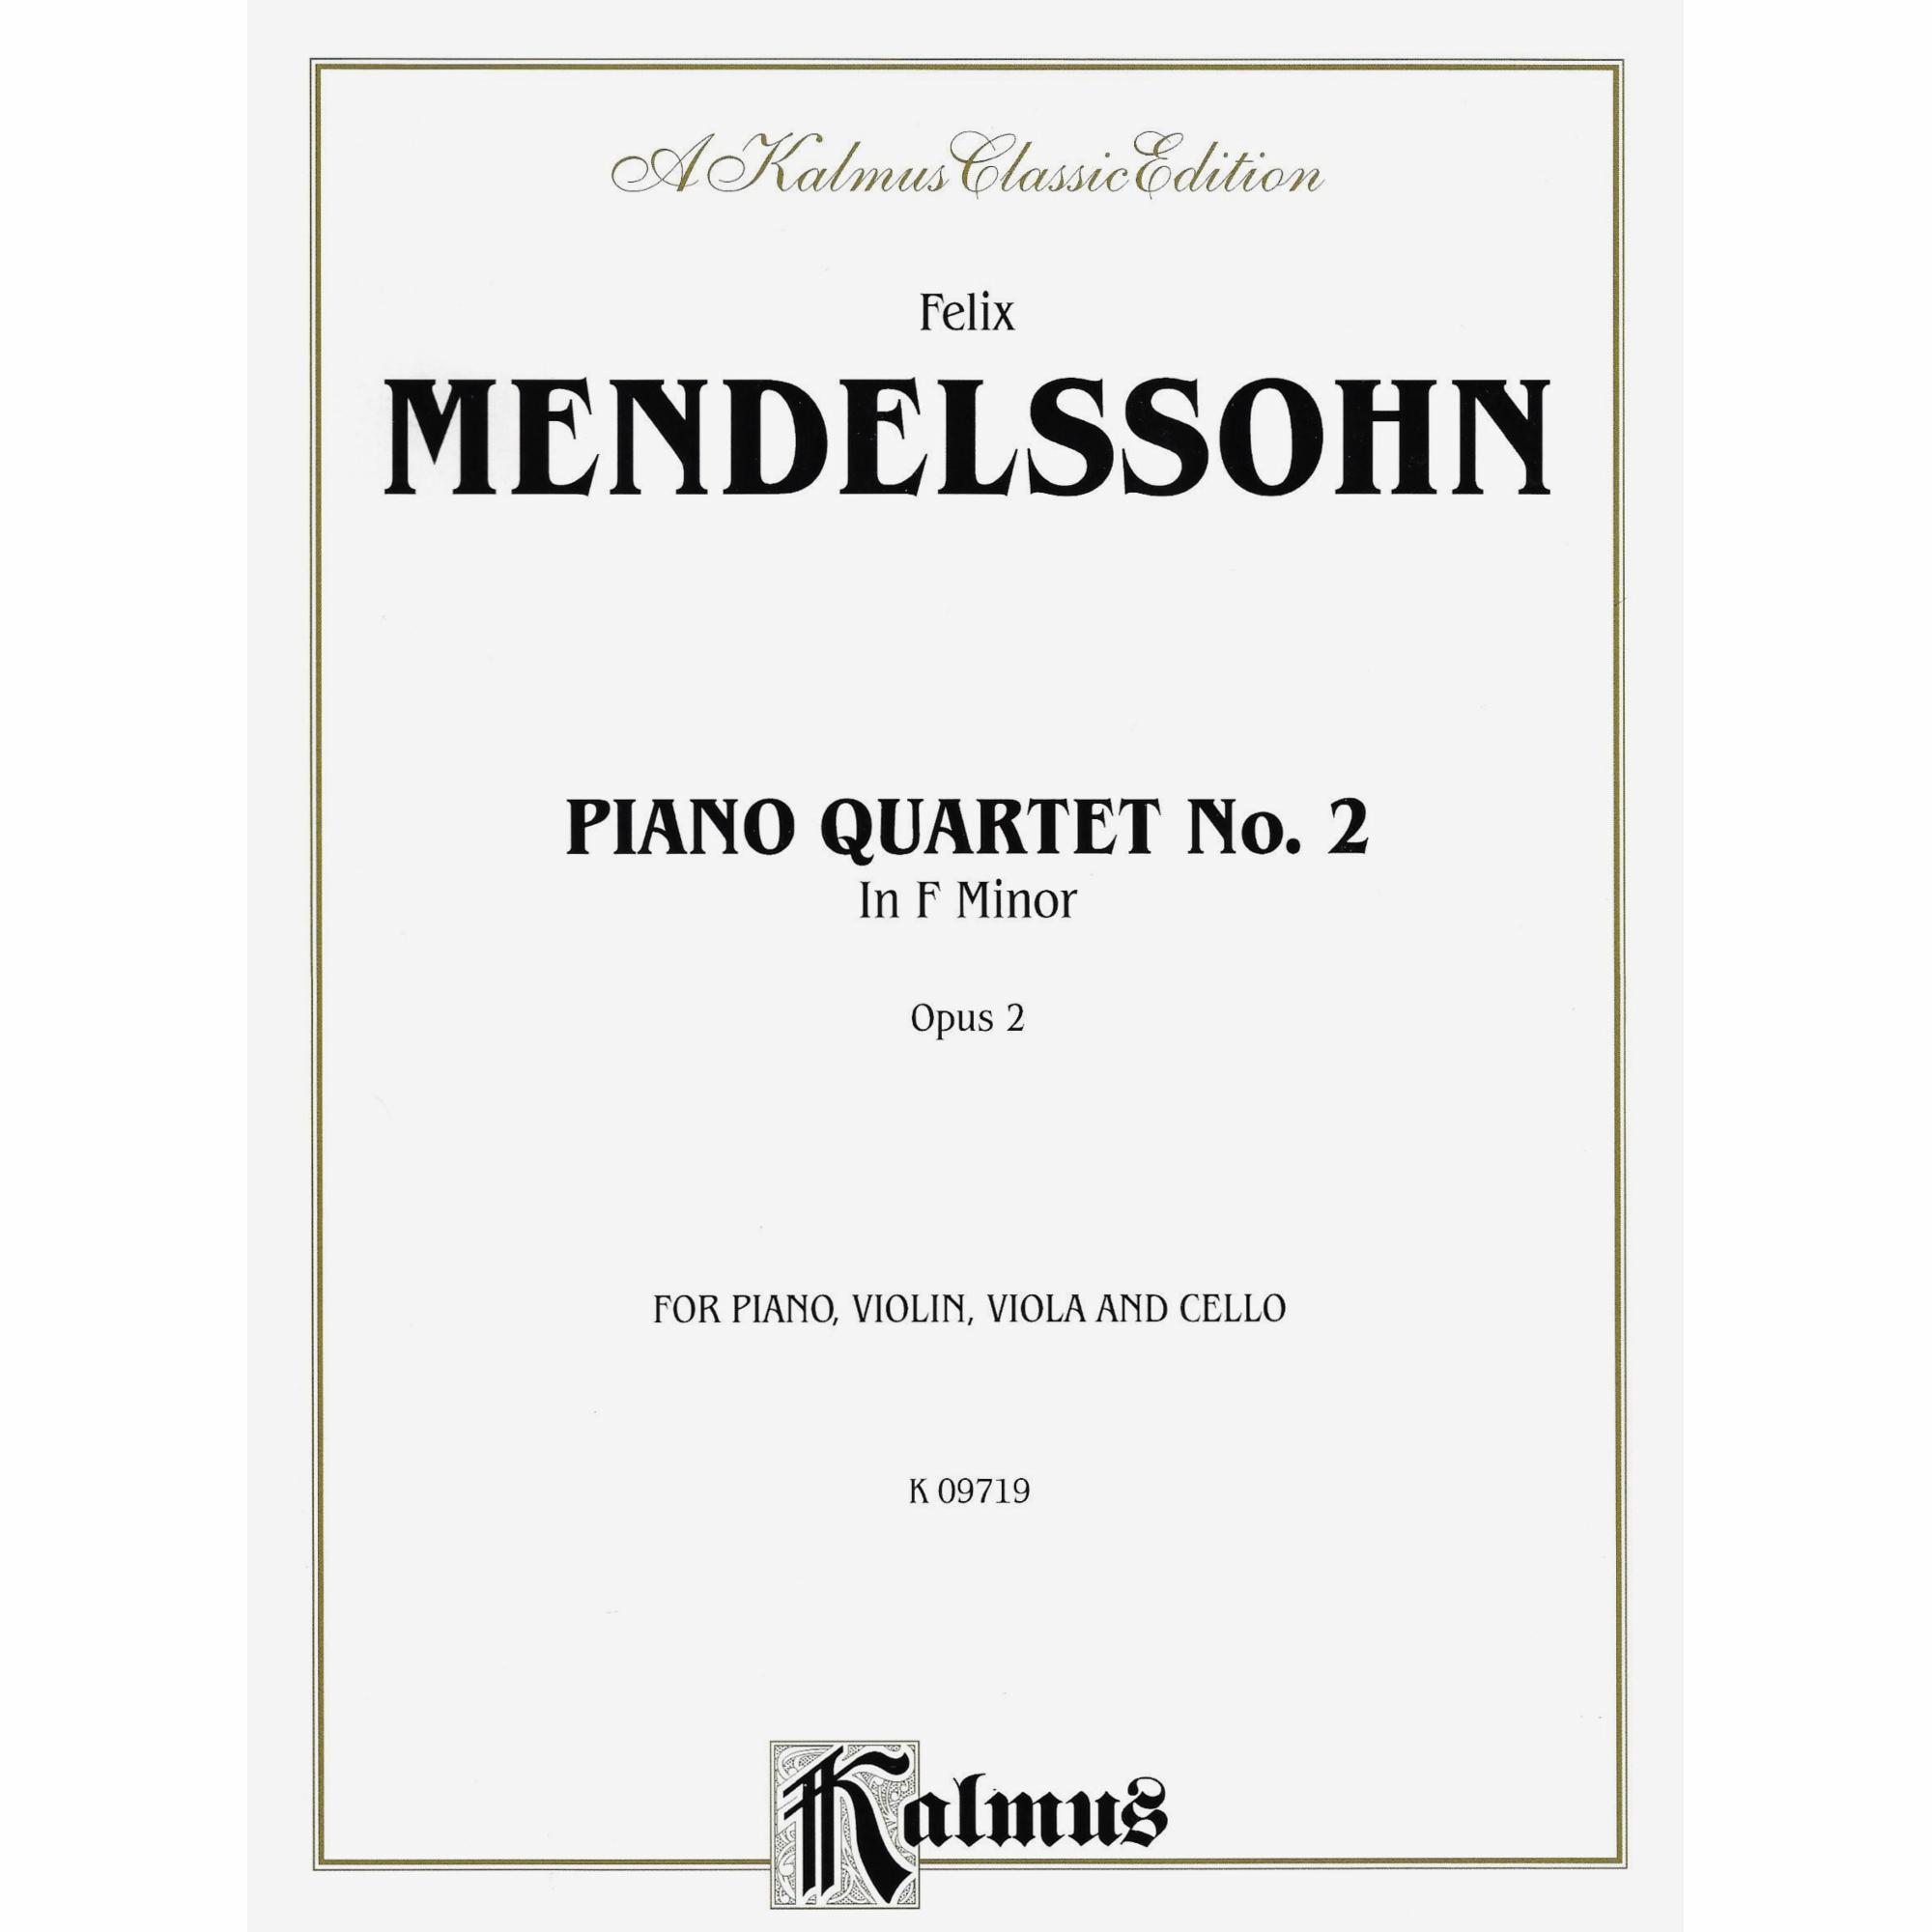 Mendelssohn -- Piano Quartet No. 2 in F Minor, Op. 2